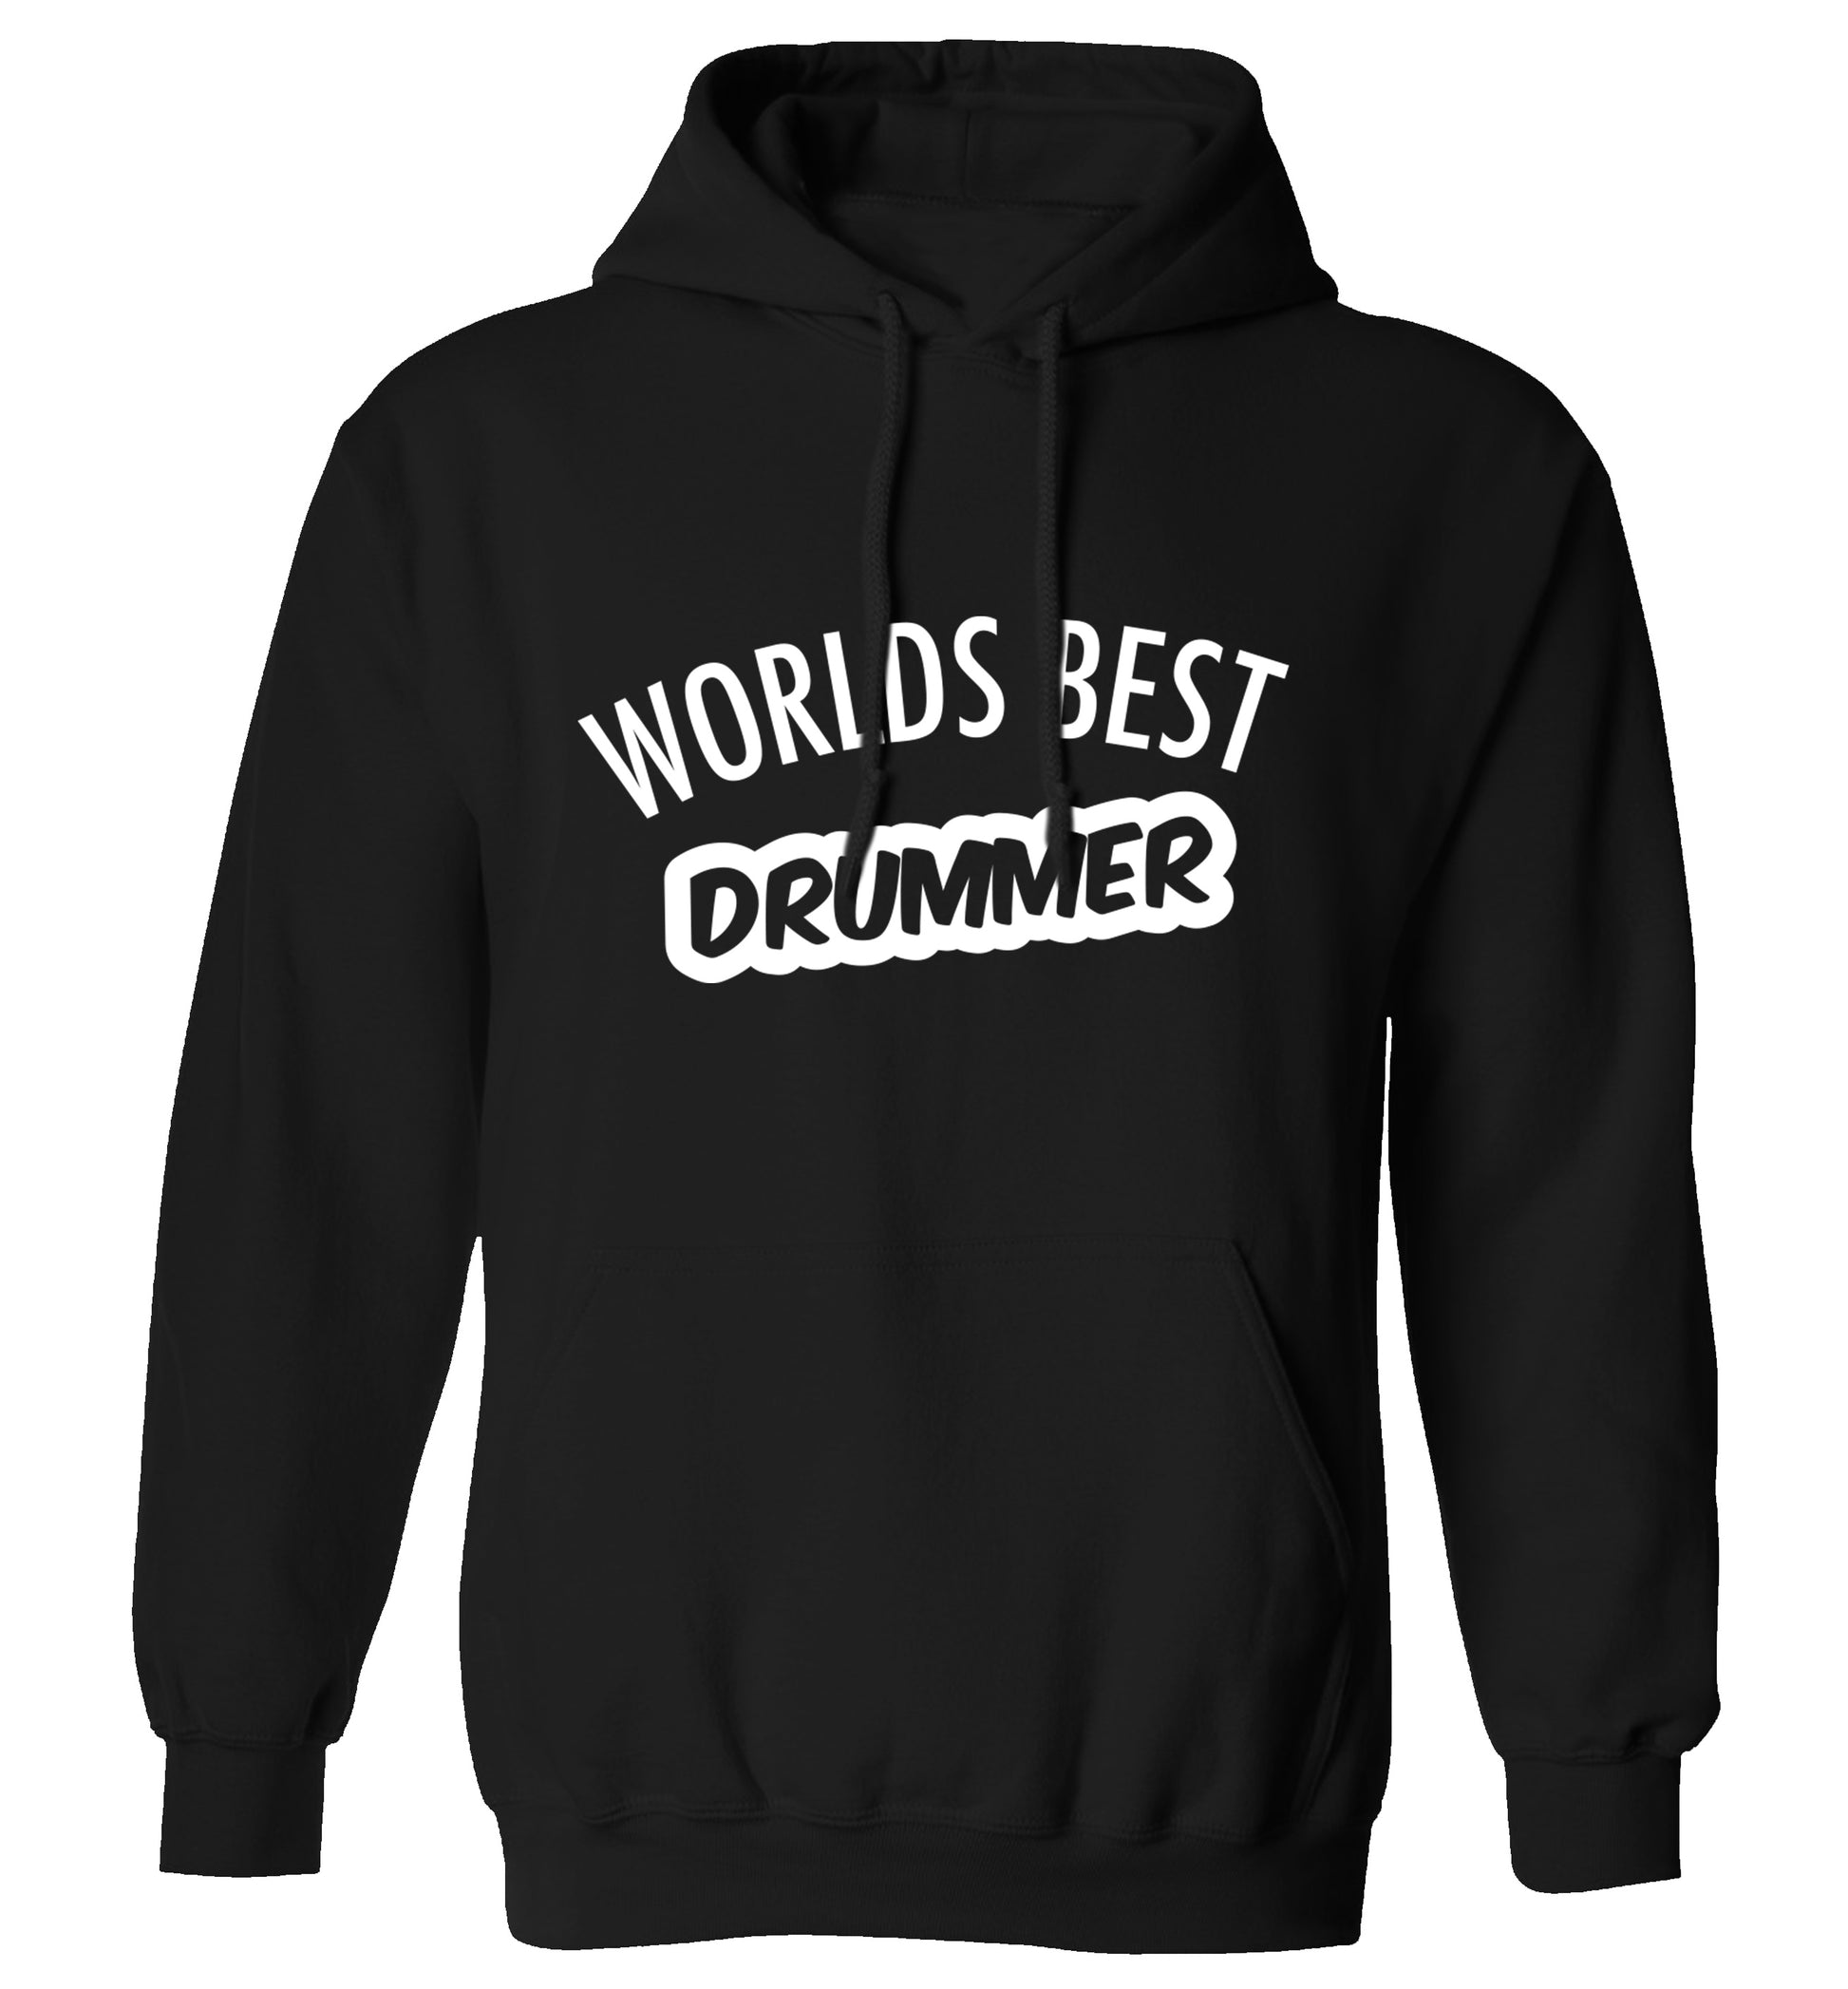 Worlds best drummer adults unisex black hoodie 2XL